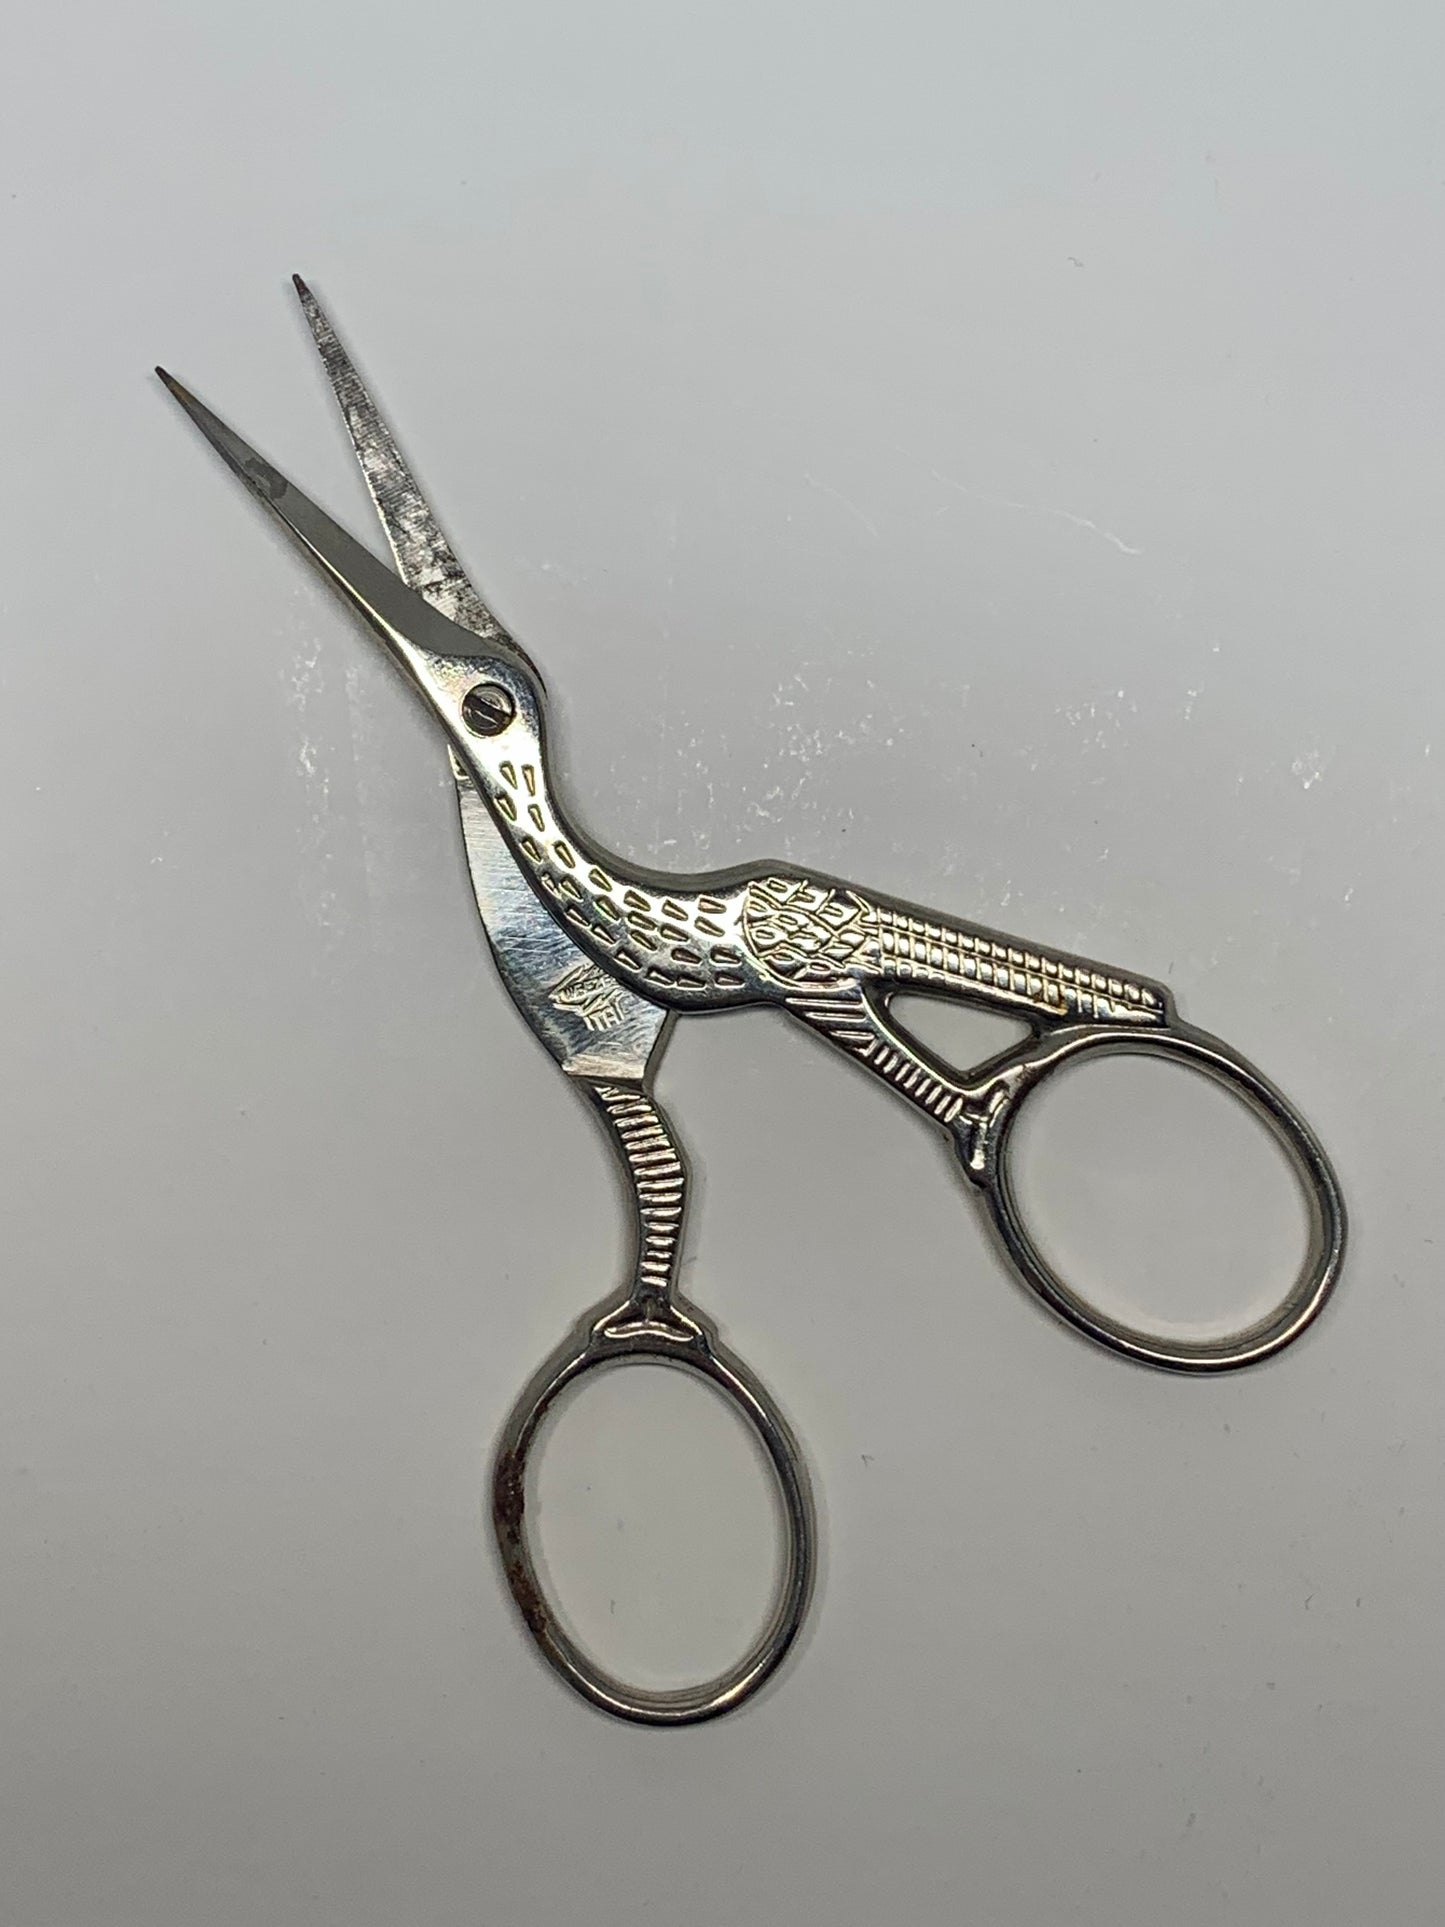 LOVELY Antique Scissors,Sewing Scissors, Needlework Scissors